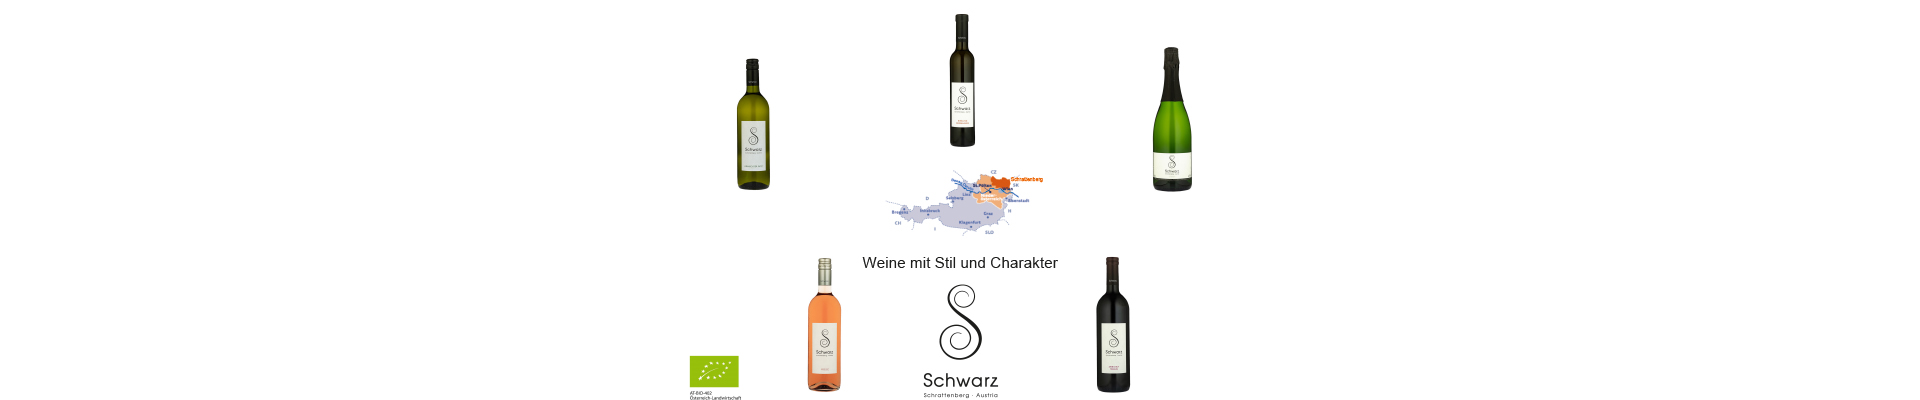 Diverse Wein- und Sektflaschen